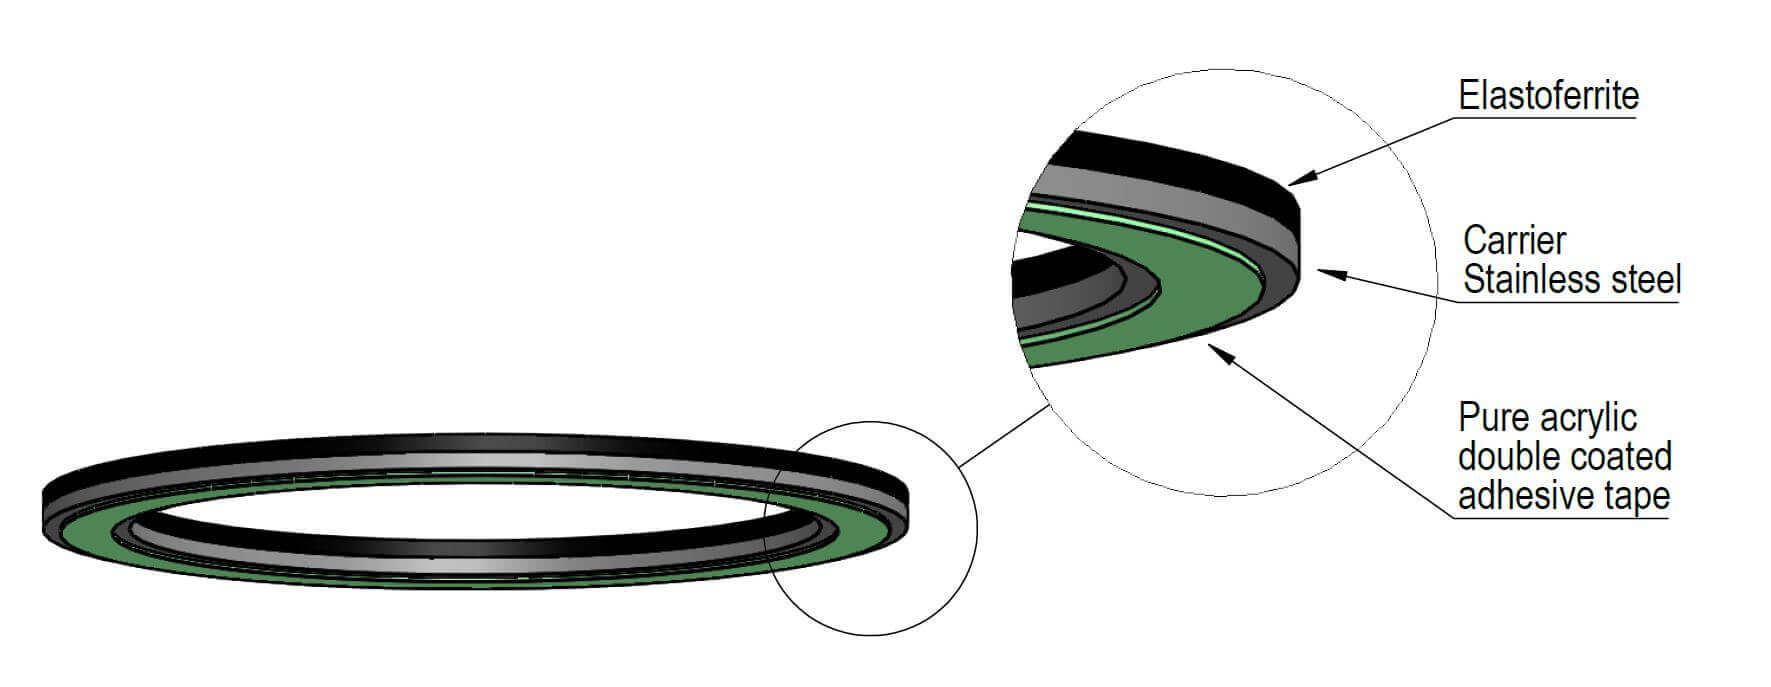 軸向磁環的結構